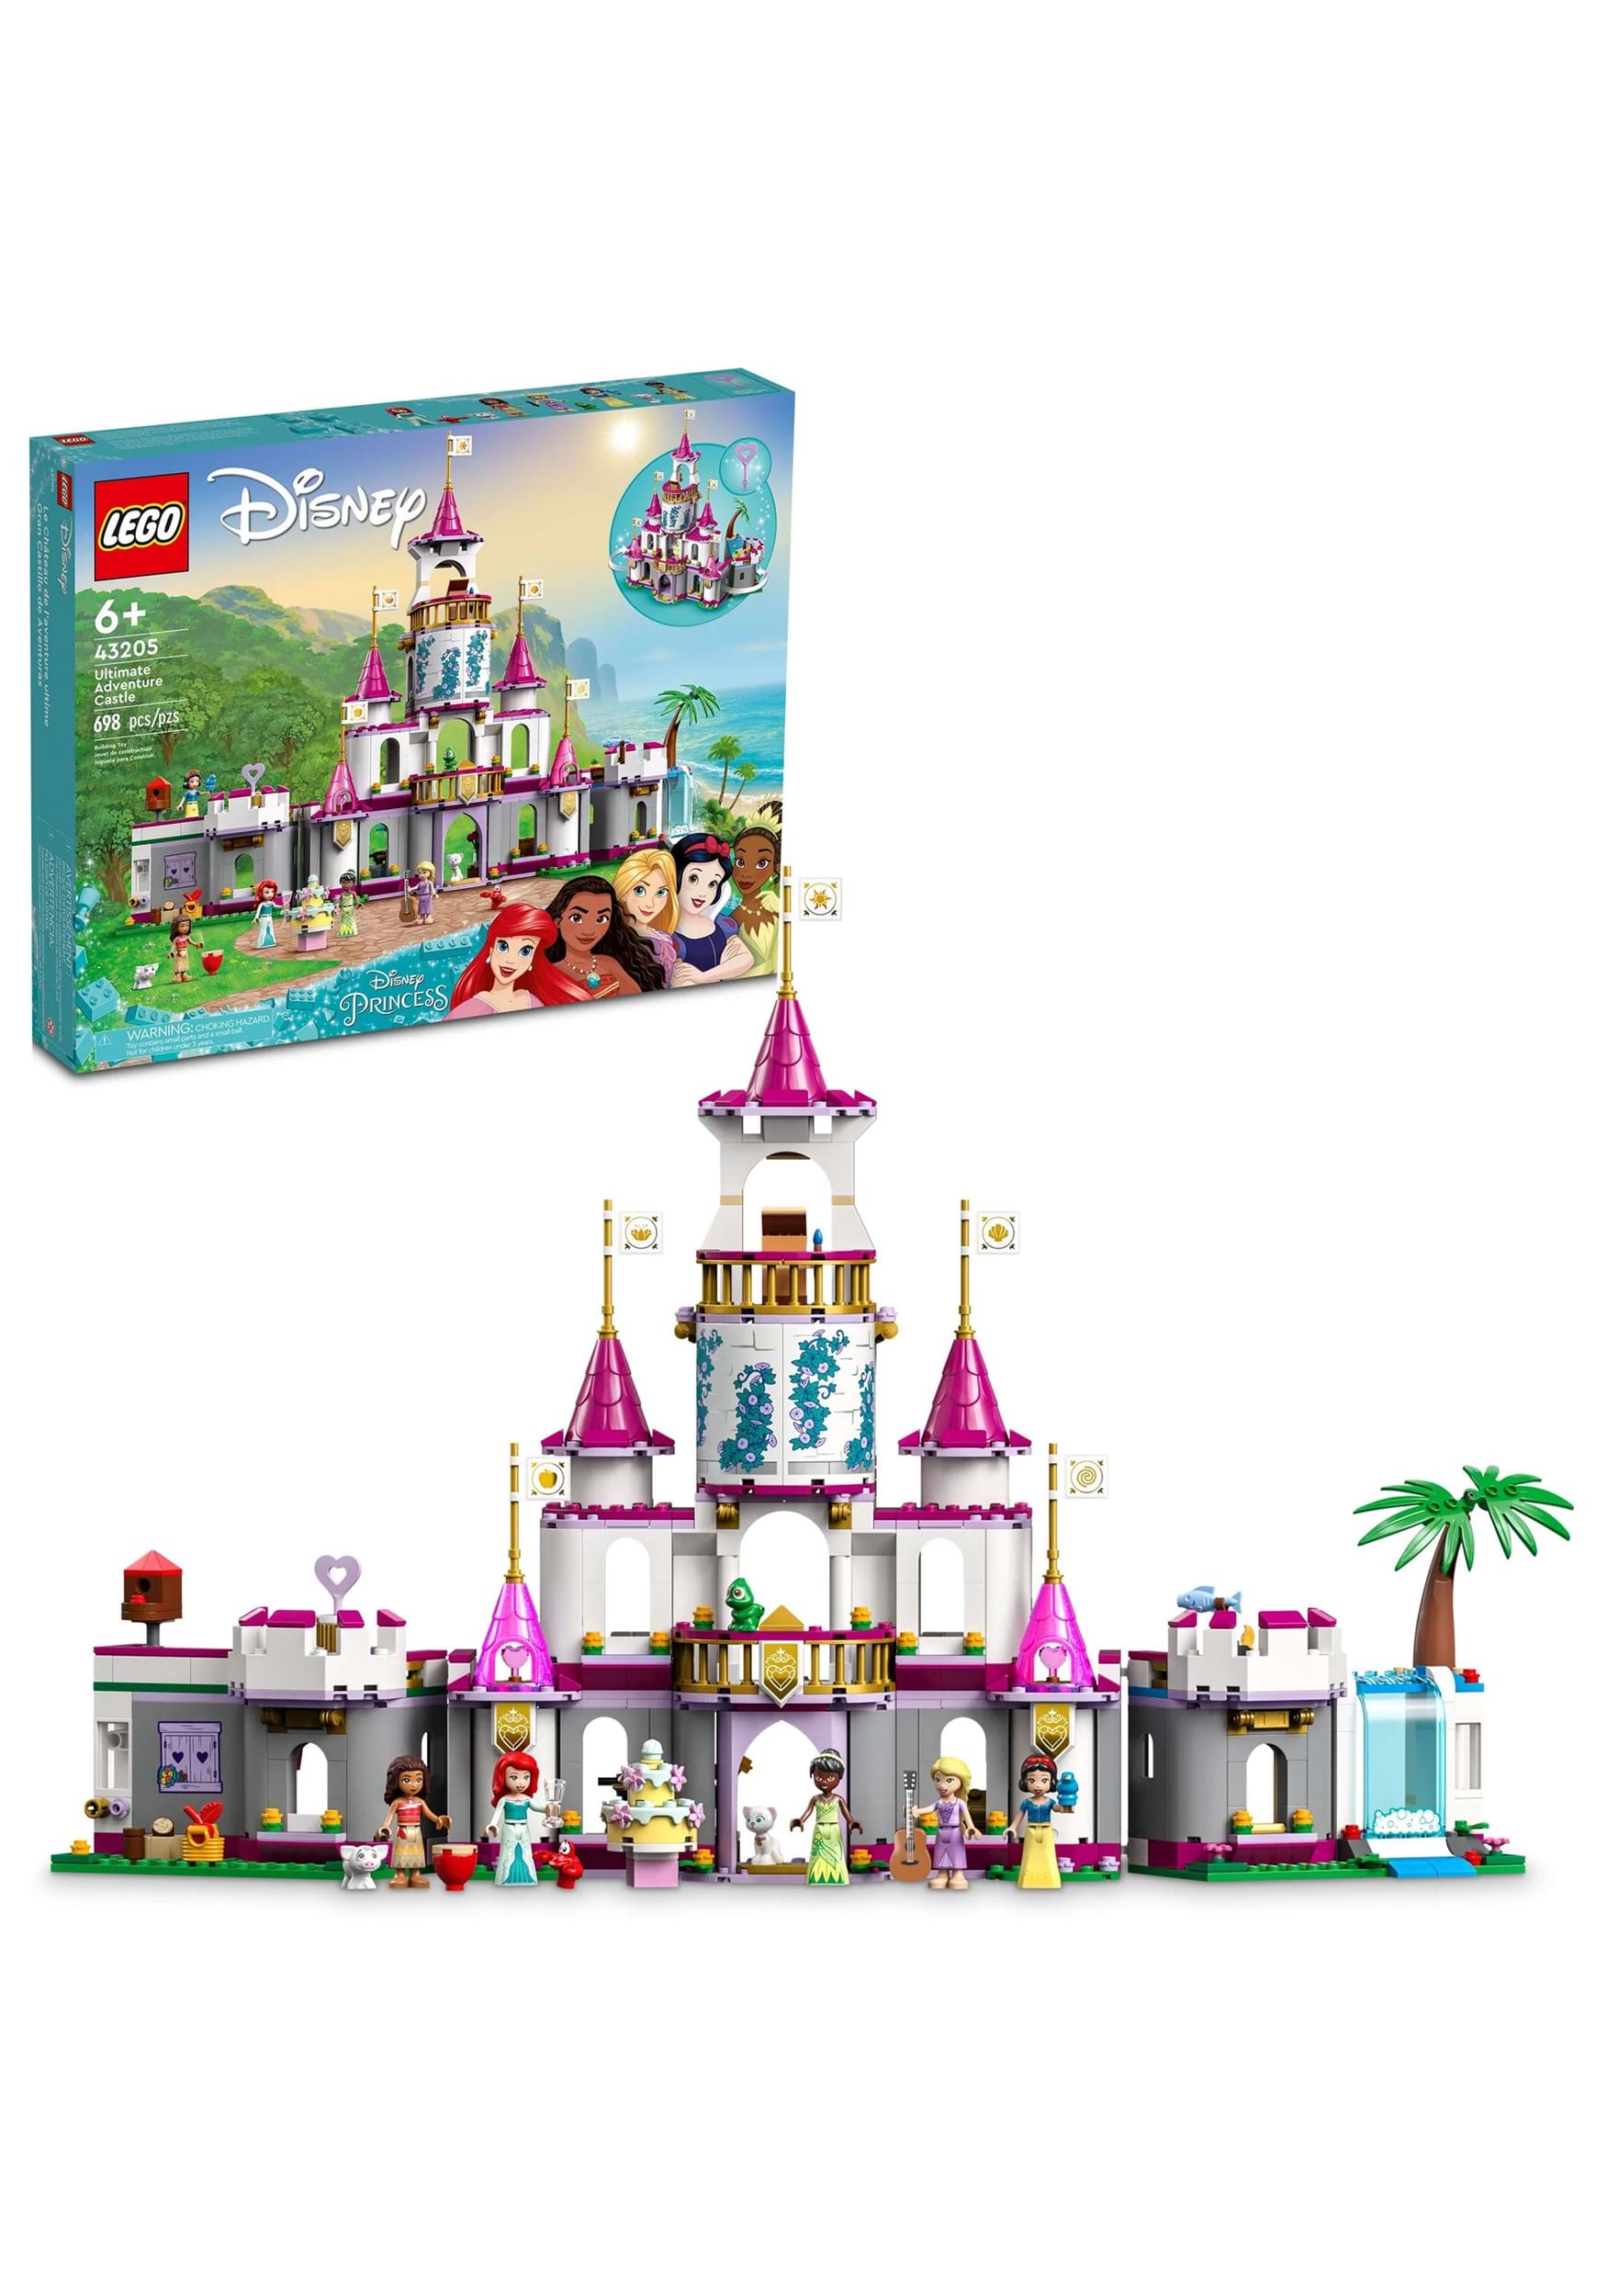 Disney LEGO Ultimate Adventure Castle